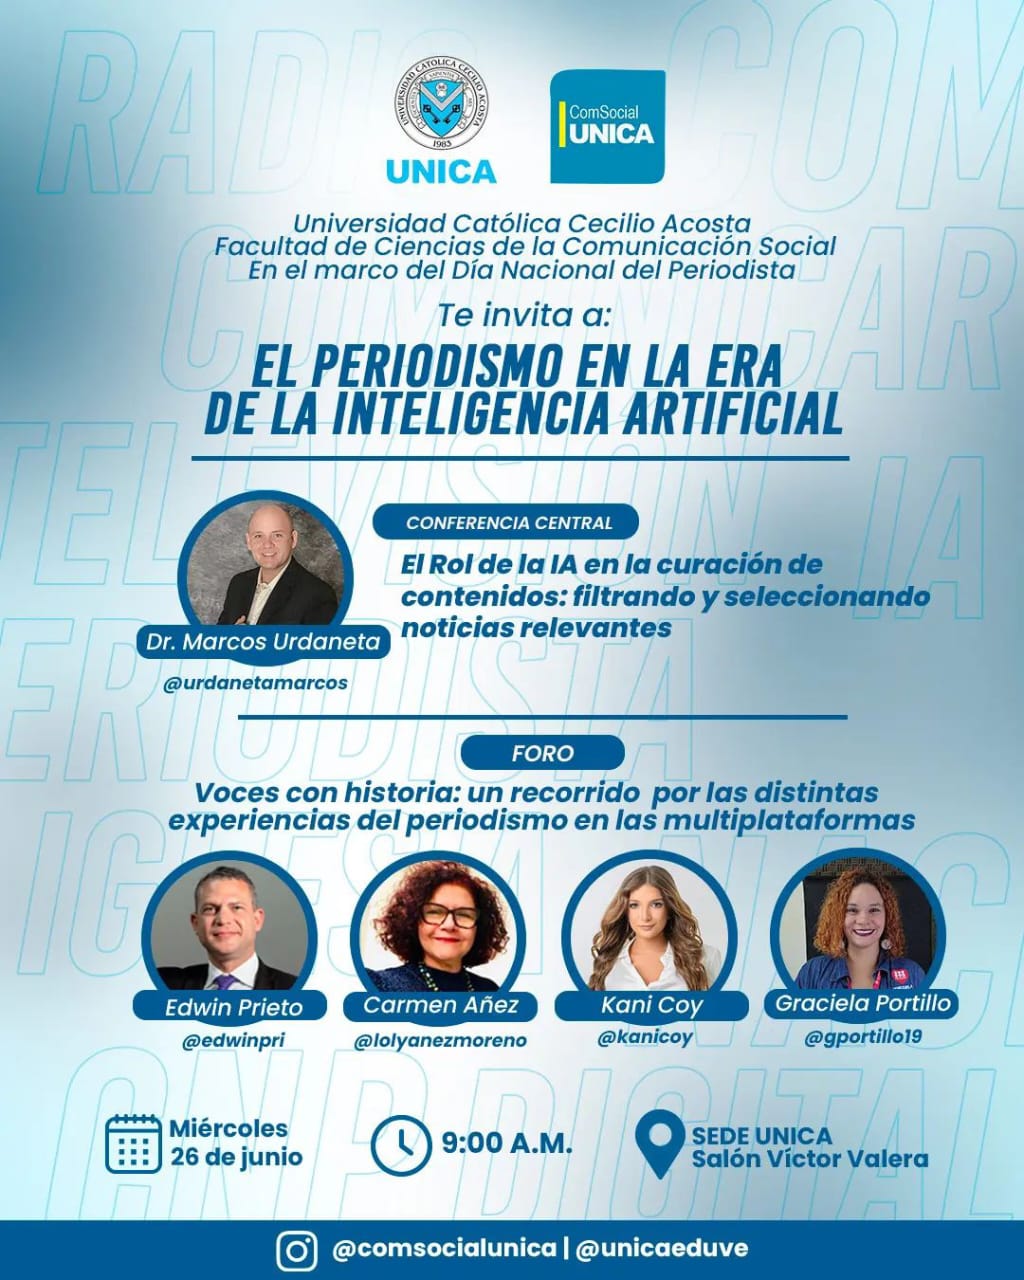 UNICA invita al evento: El periodismo en la era de la inteligencia artificial